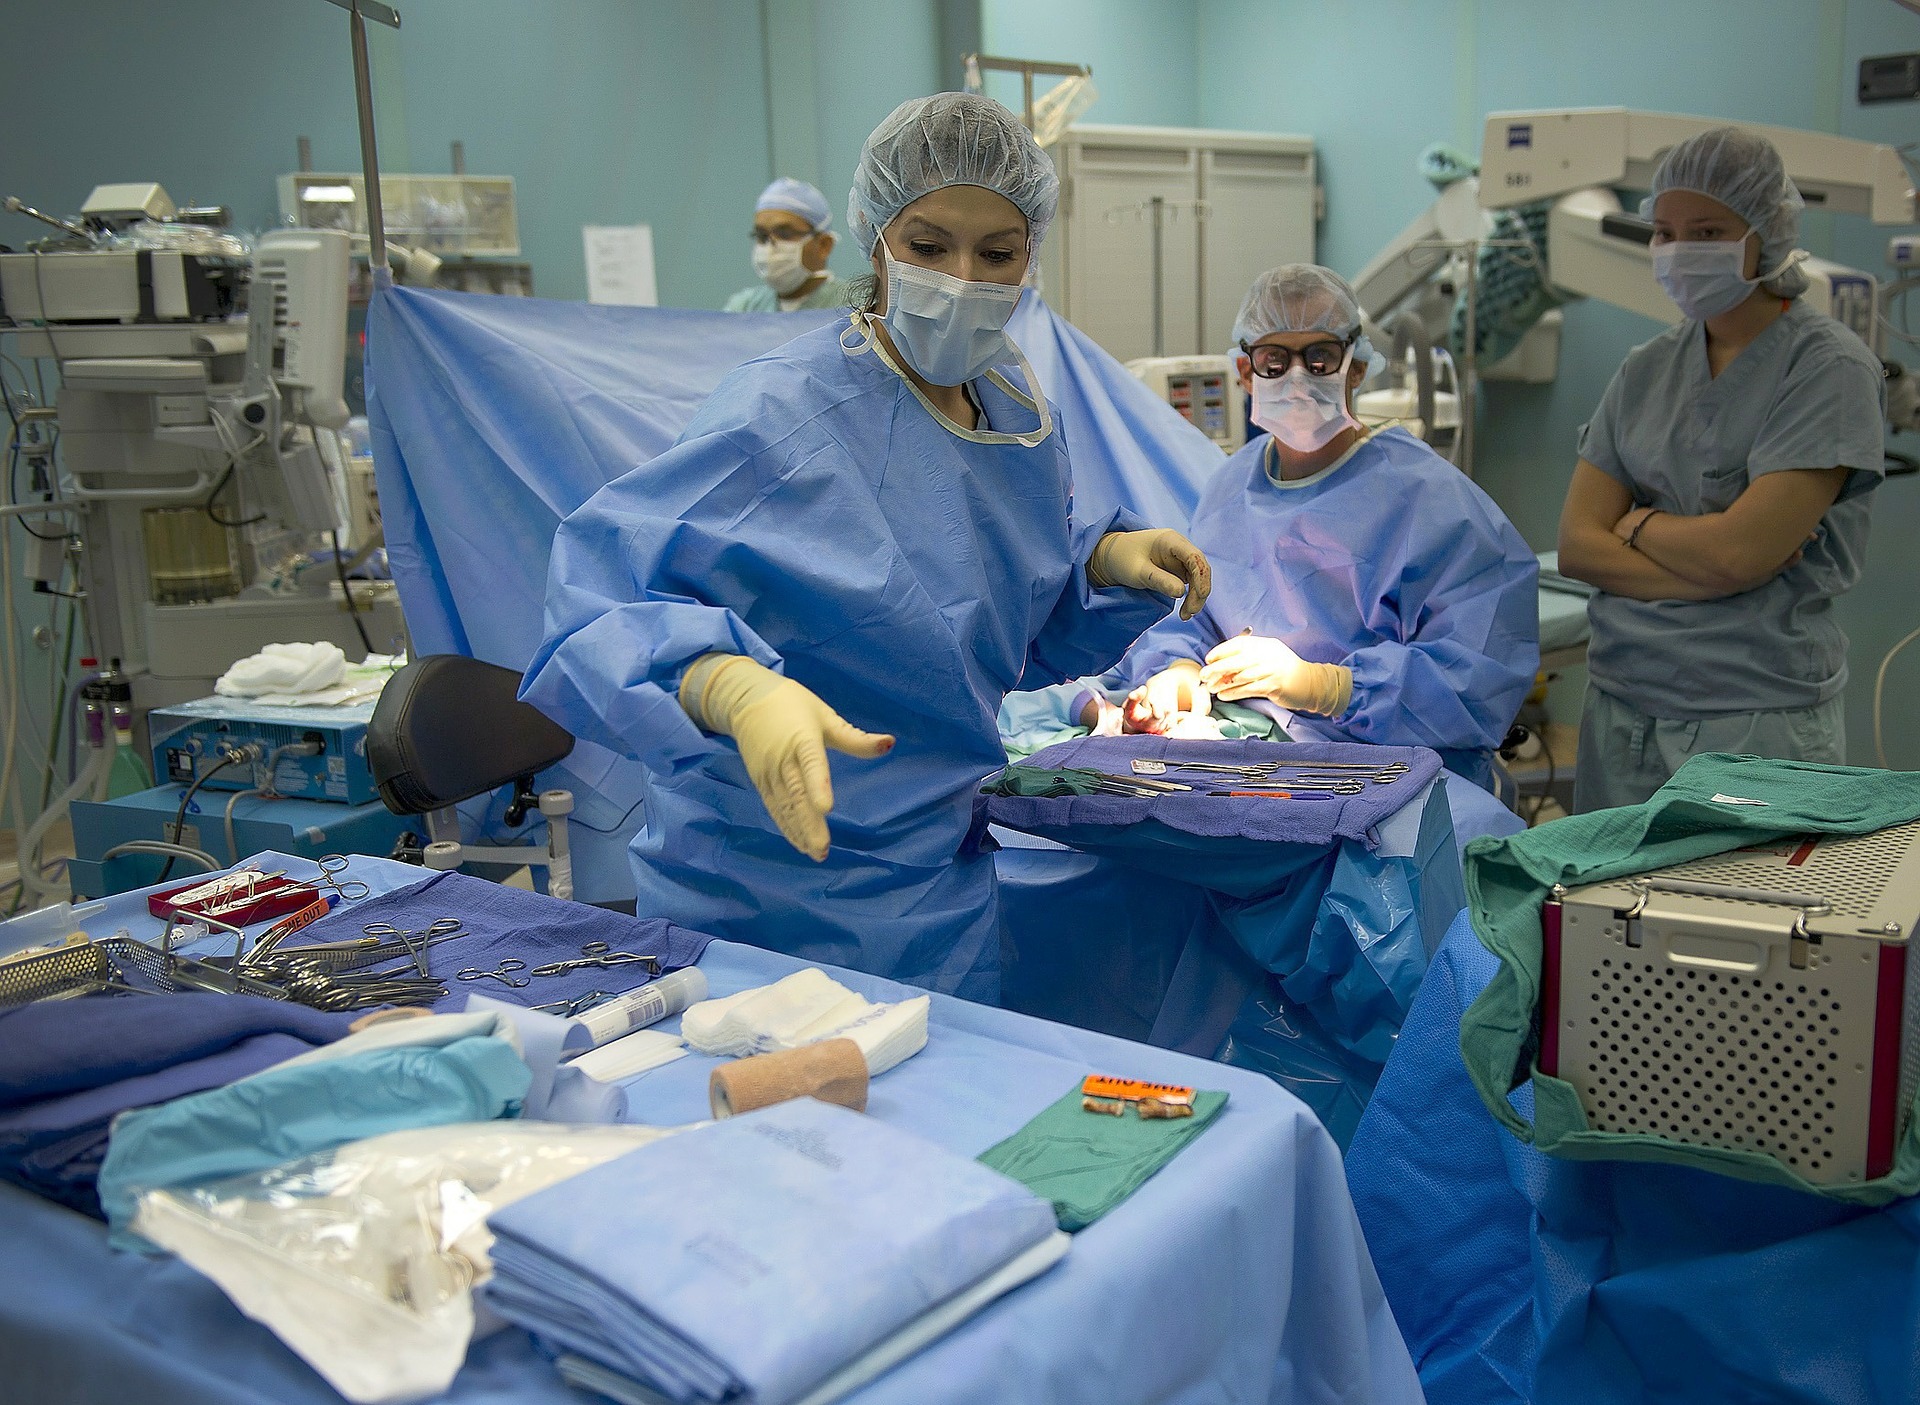 האיגוד הישראלי לכירורגיה פלסטית - חדר ניתוח (1)